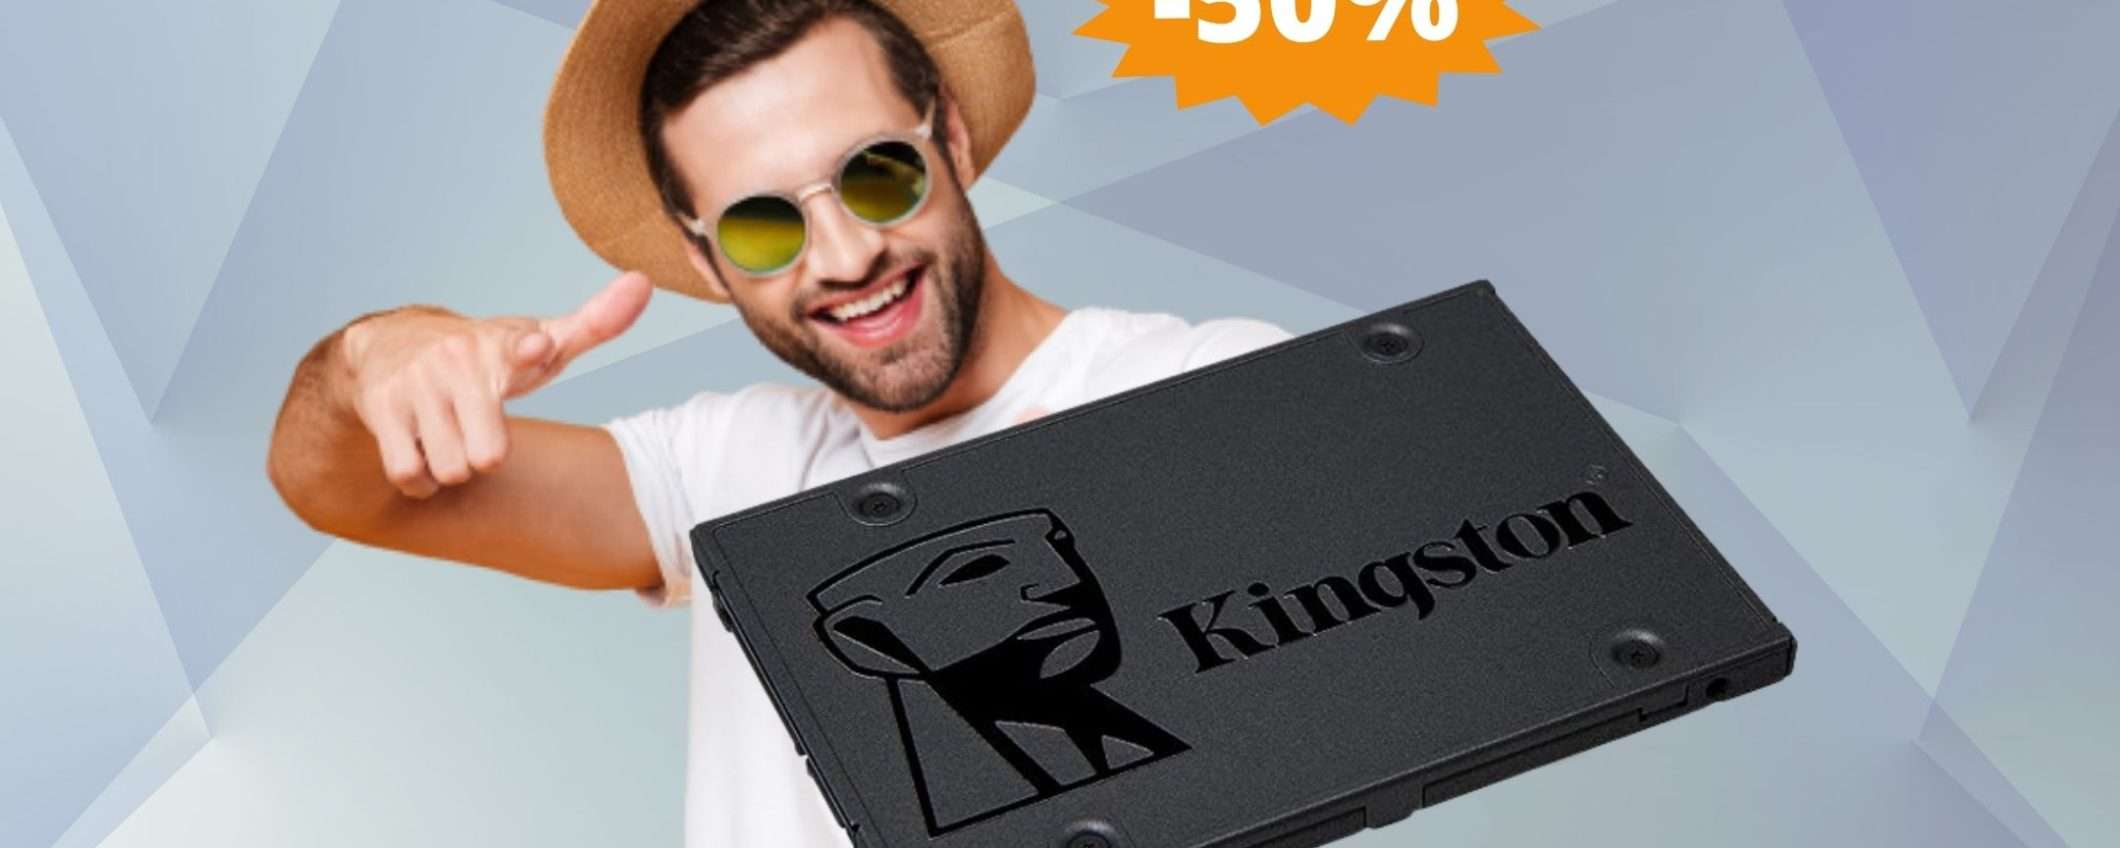 SSD Kingston A400: sconto FOLLE del 50% su Amazon